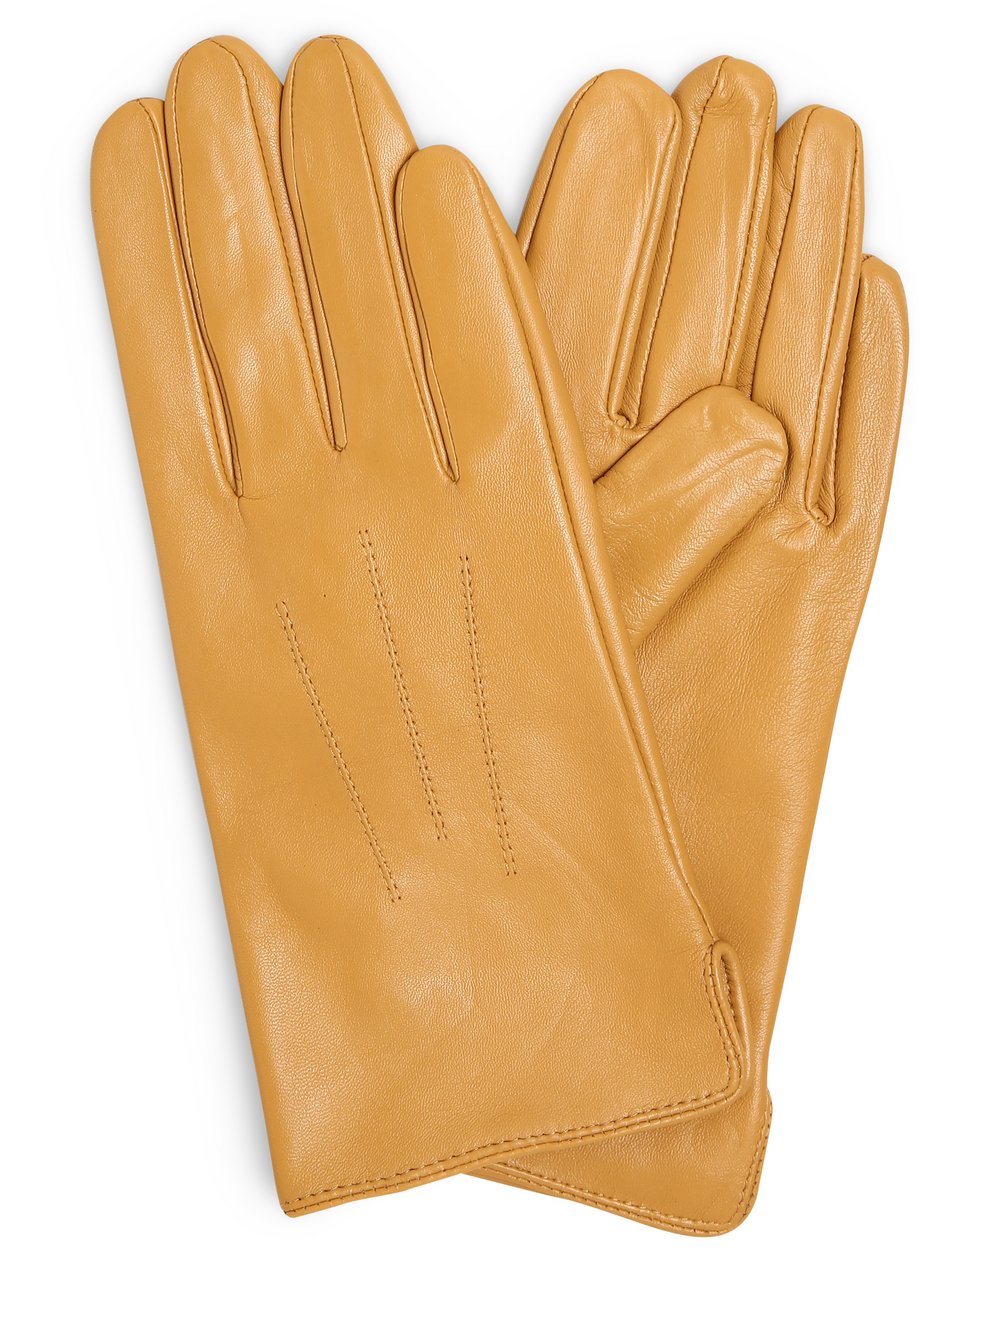 KESSLER - Skórzane rękawiczki damskie, żółty